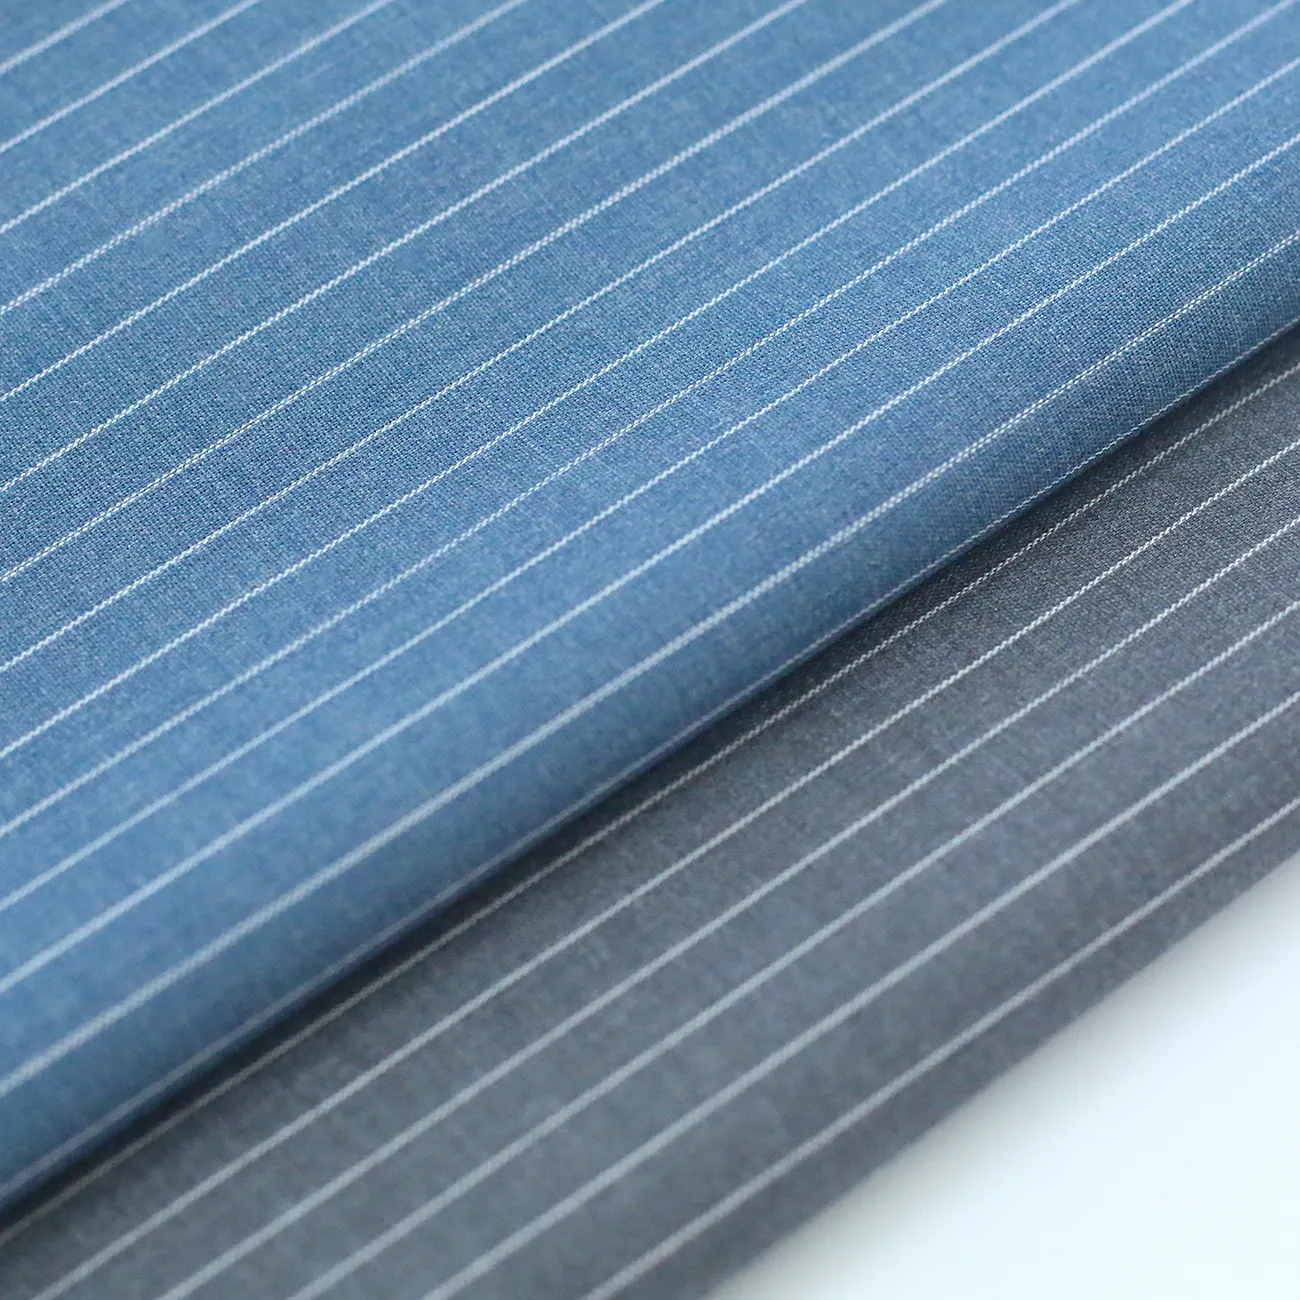 Camisa xadrez 120gsm tecido listra extravagante 49.1% bambu 47.1% poliéster 3.8% fio elastano tecido elástico tingido para camisa